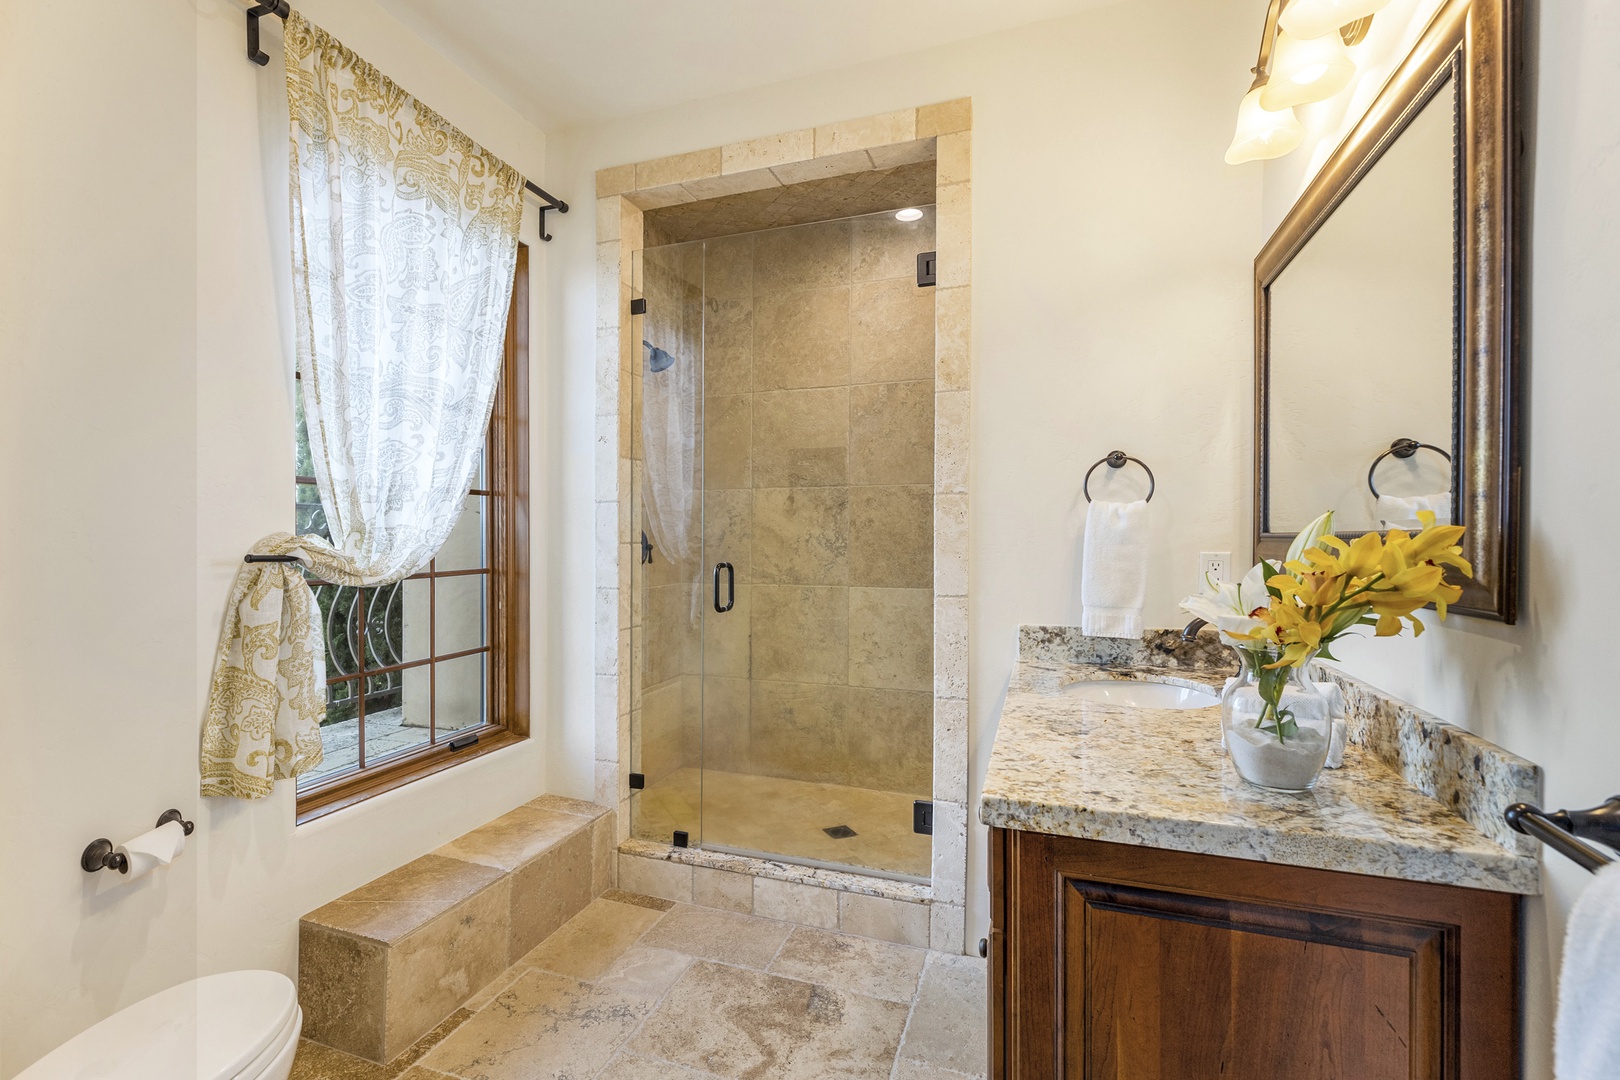 Fairfield Vacation Rentals, Villa Capricho - Ensuite bathroom with walk-in shower